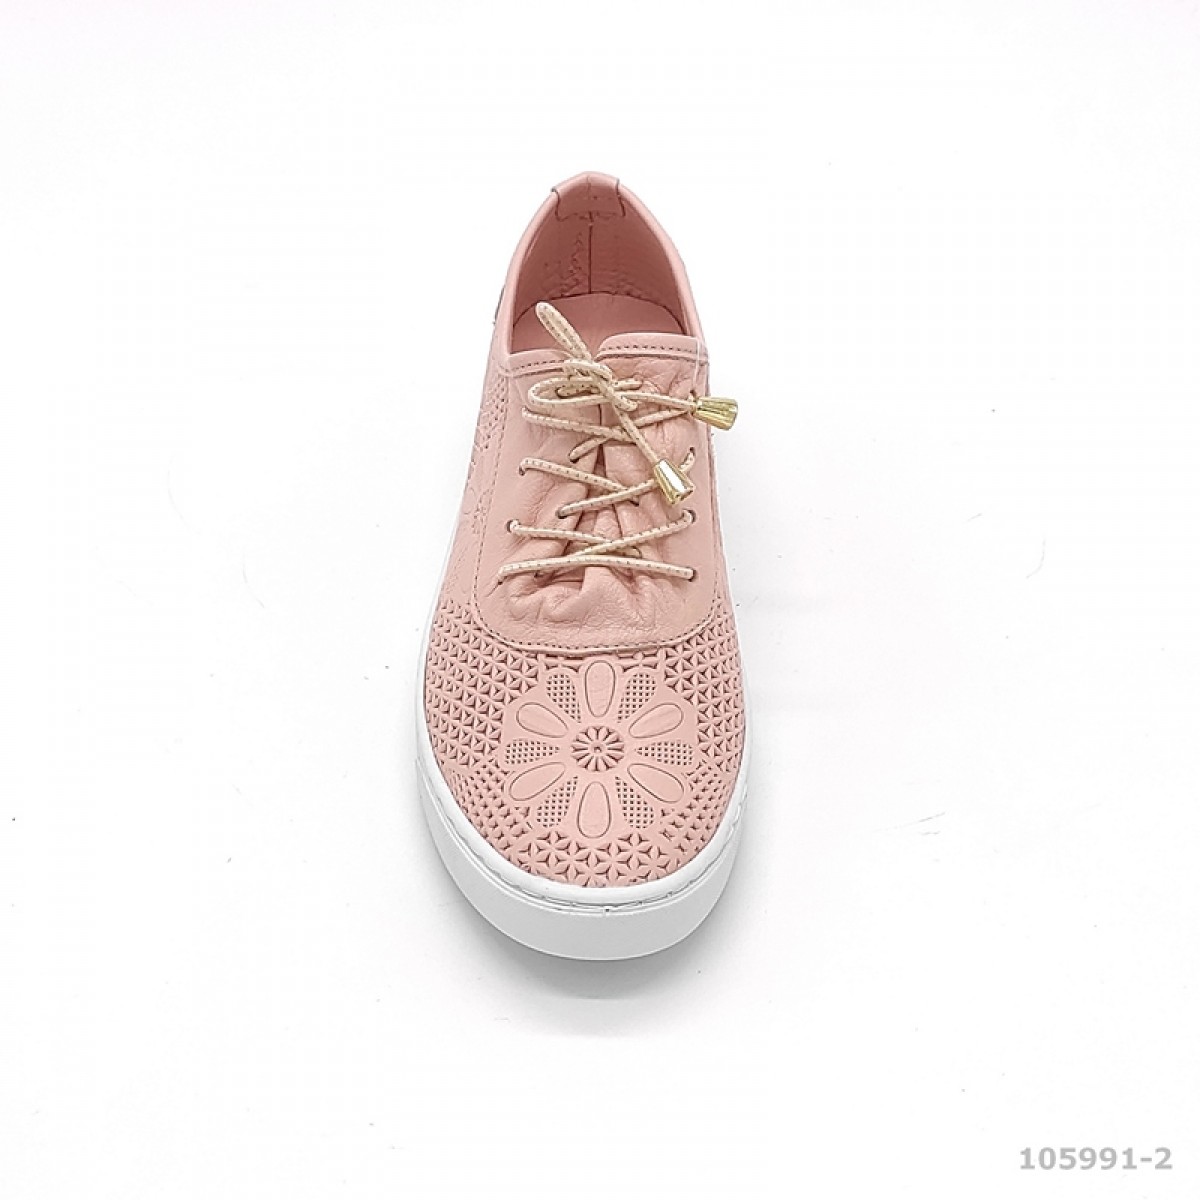  женские туфли весенние United  розовый 